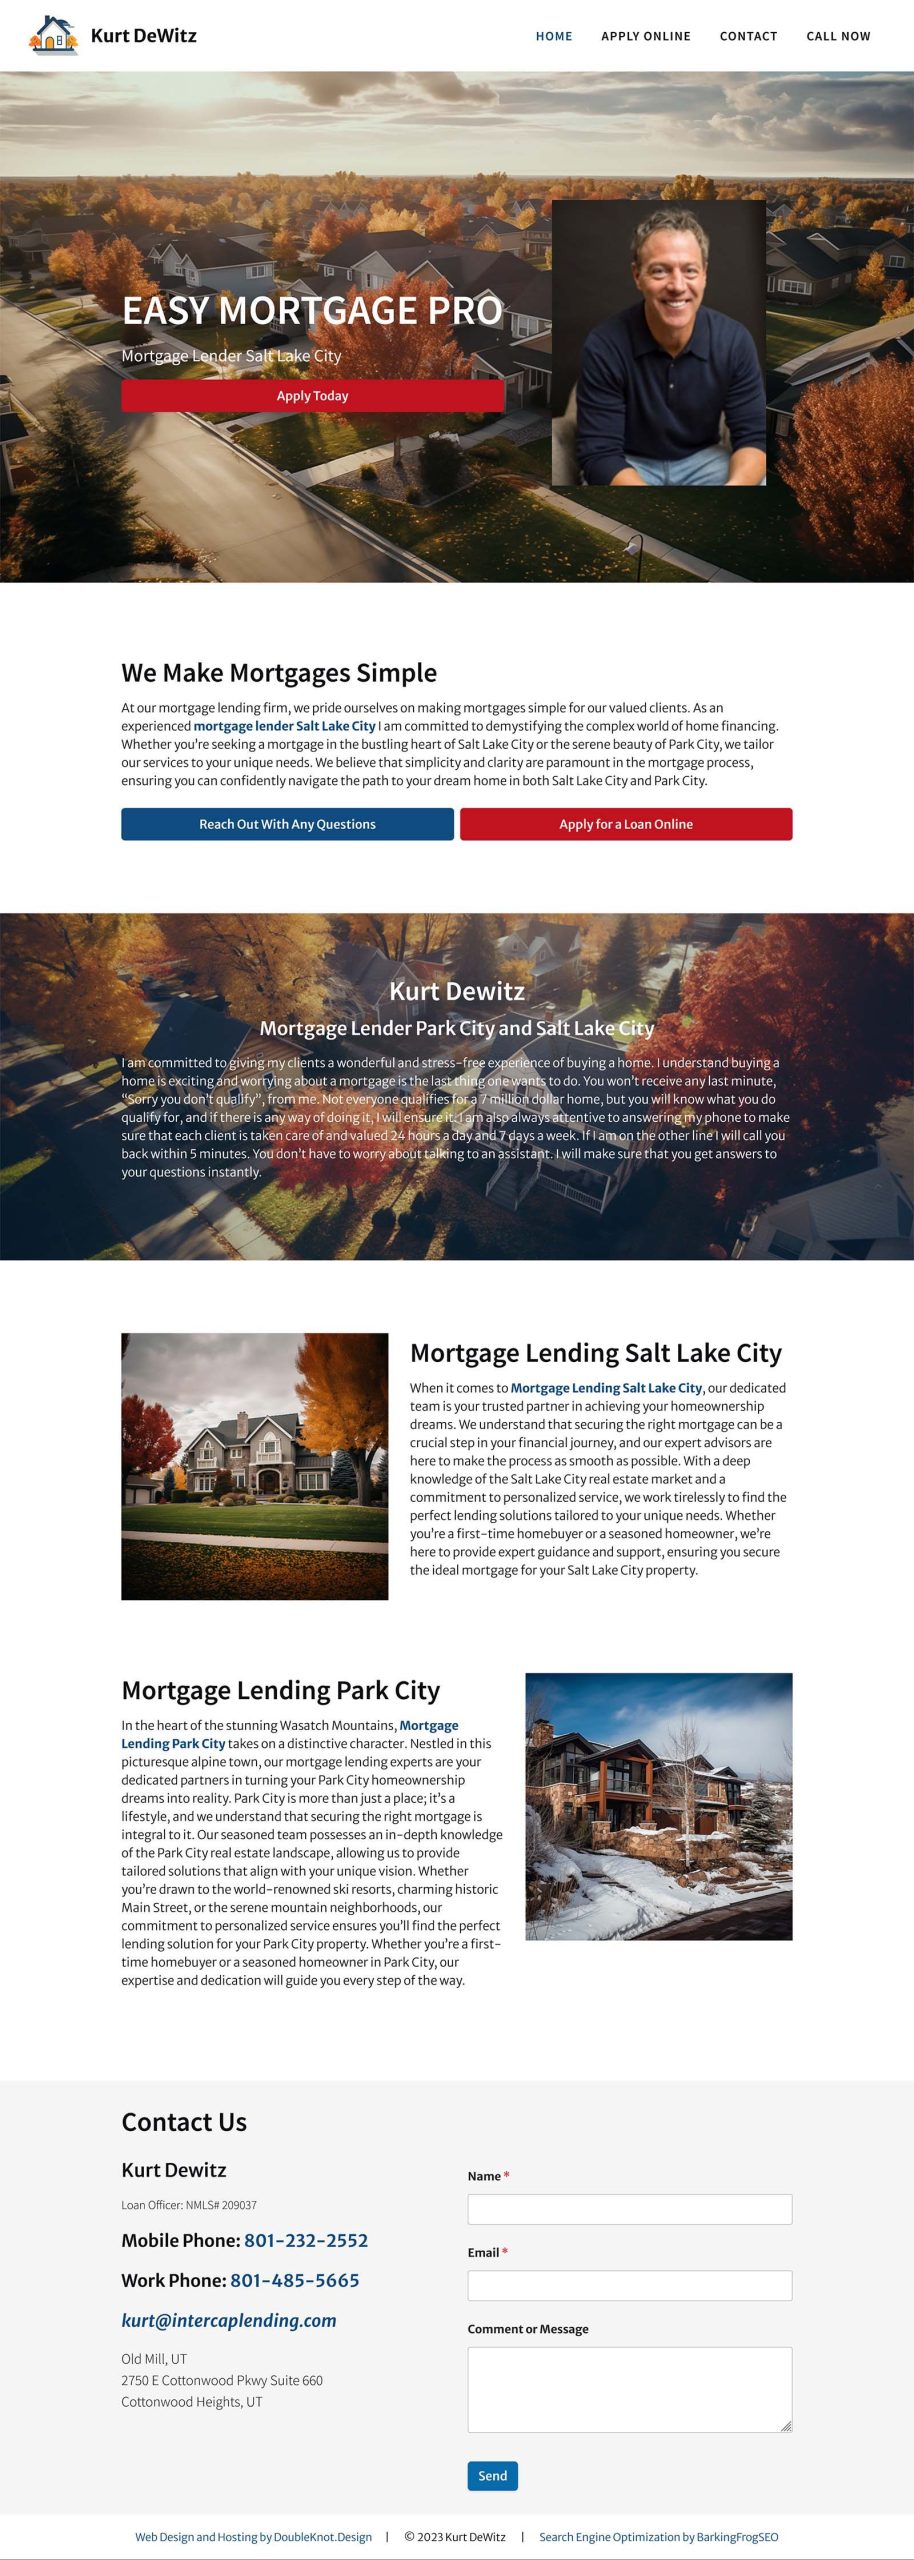 full website design screenshot easy mortgage pro